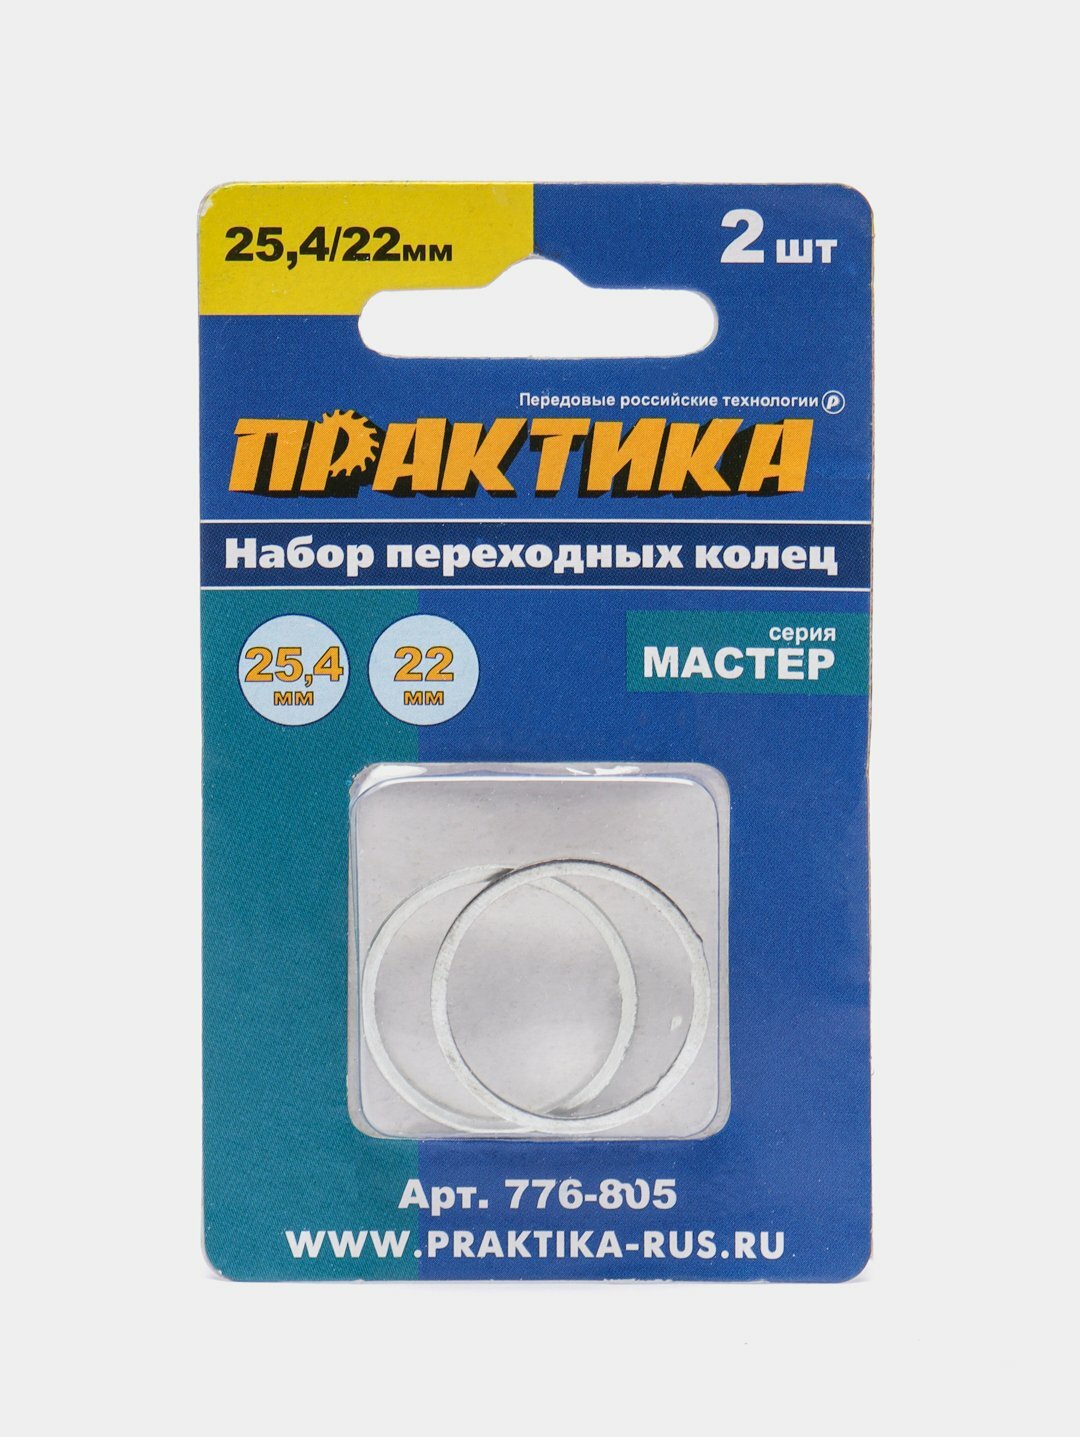 Кольцо переходное для дисков ПРАКТИКА, 25,4/22 мм, 2 штуки, толщина 1,4 и 1,2 мм